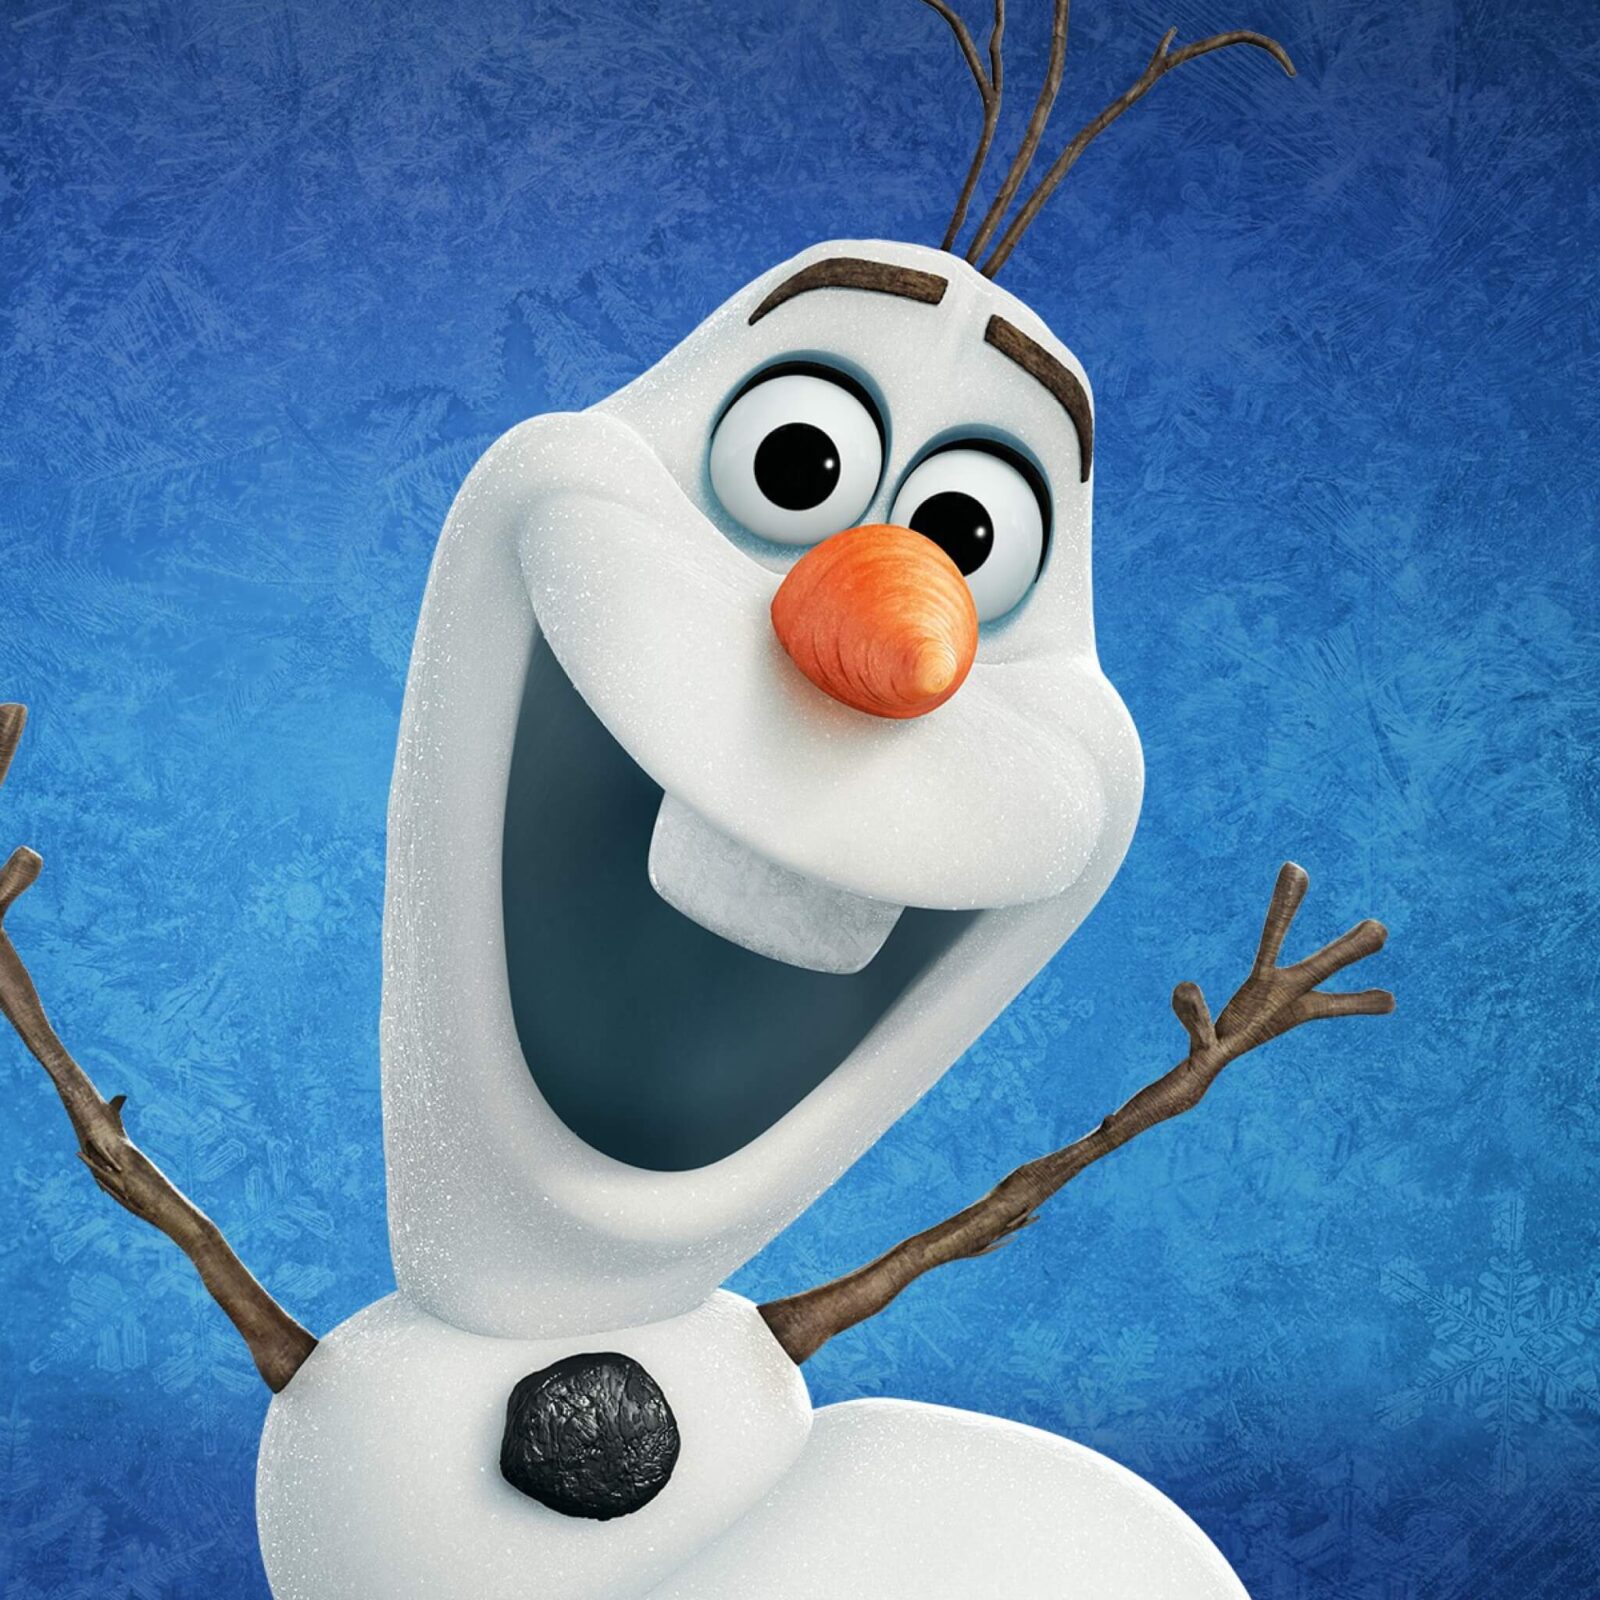 La reine des neiges, Le fond d’écran du jour spécial Noël : Olaf